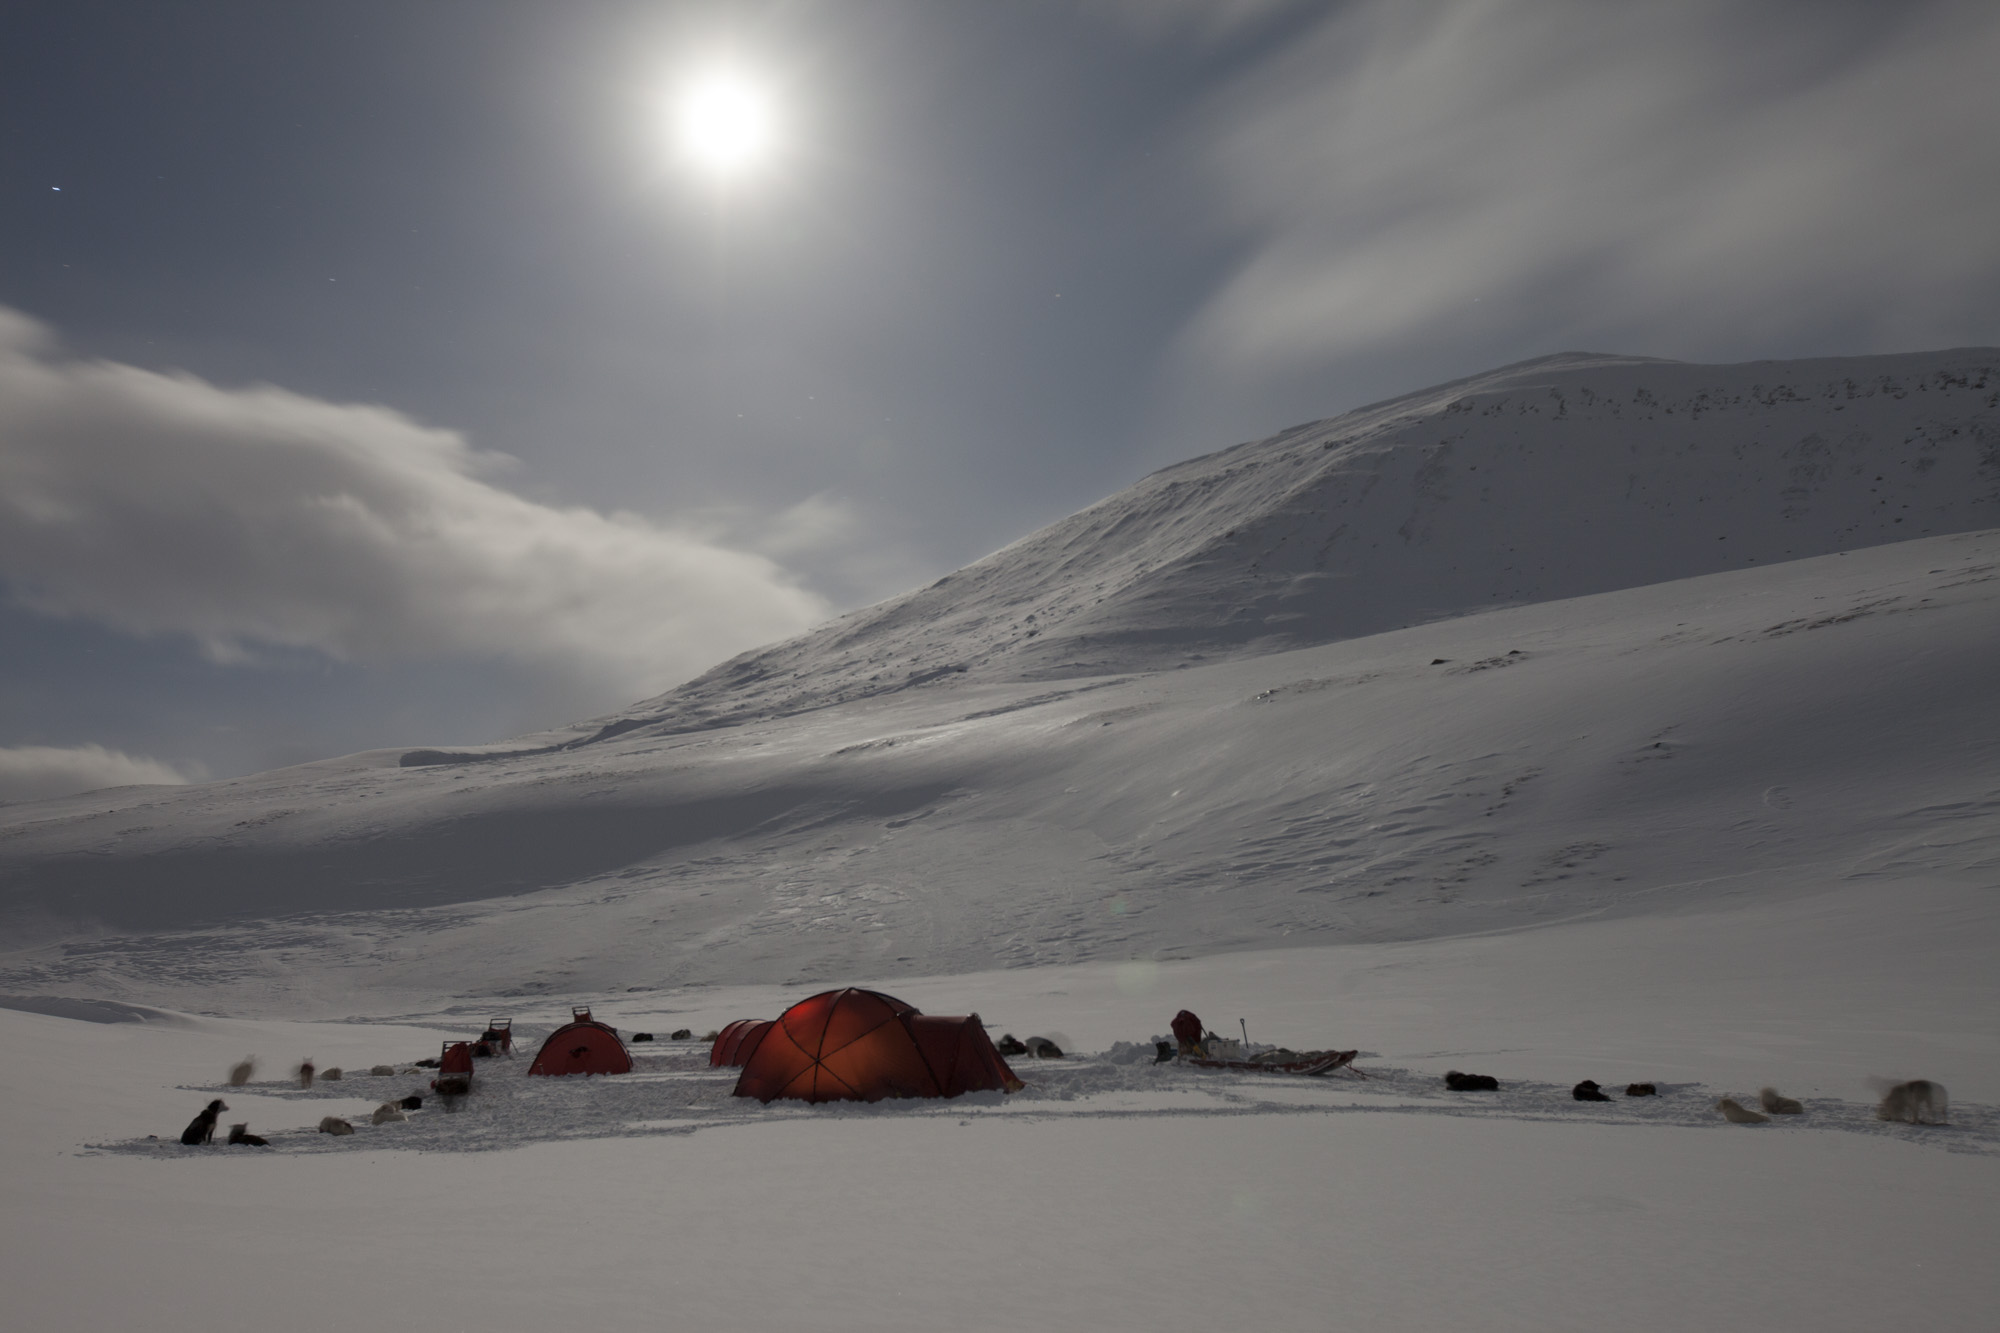 Zeltlager im Schnee bei Vollmond, Spitzbergen